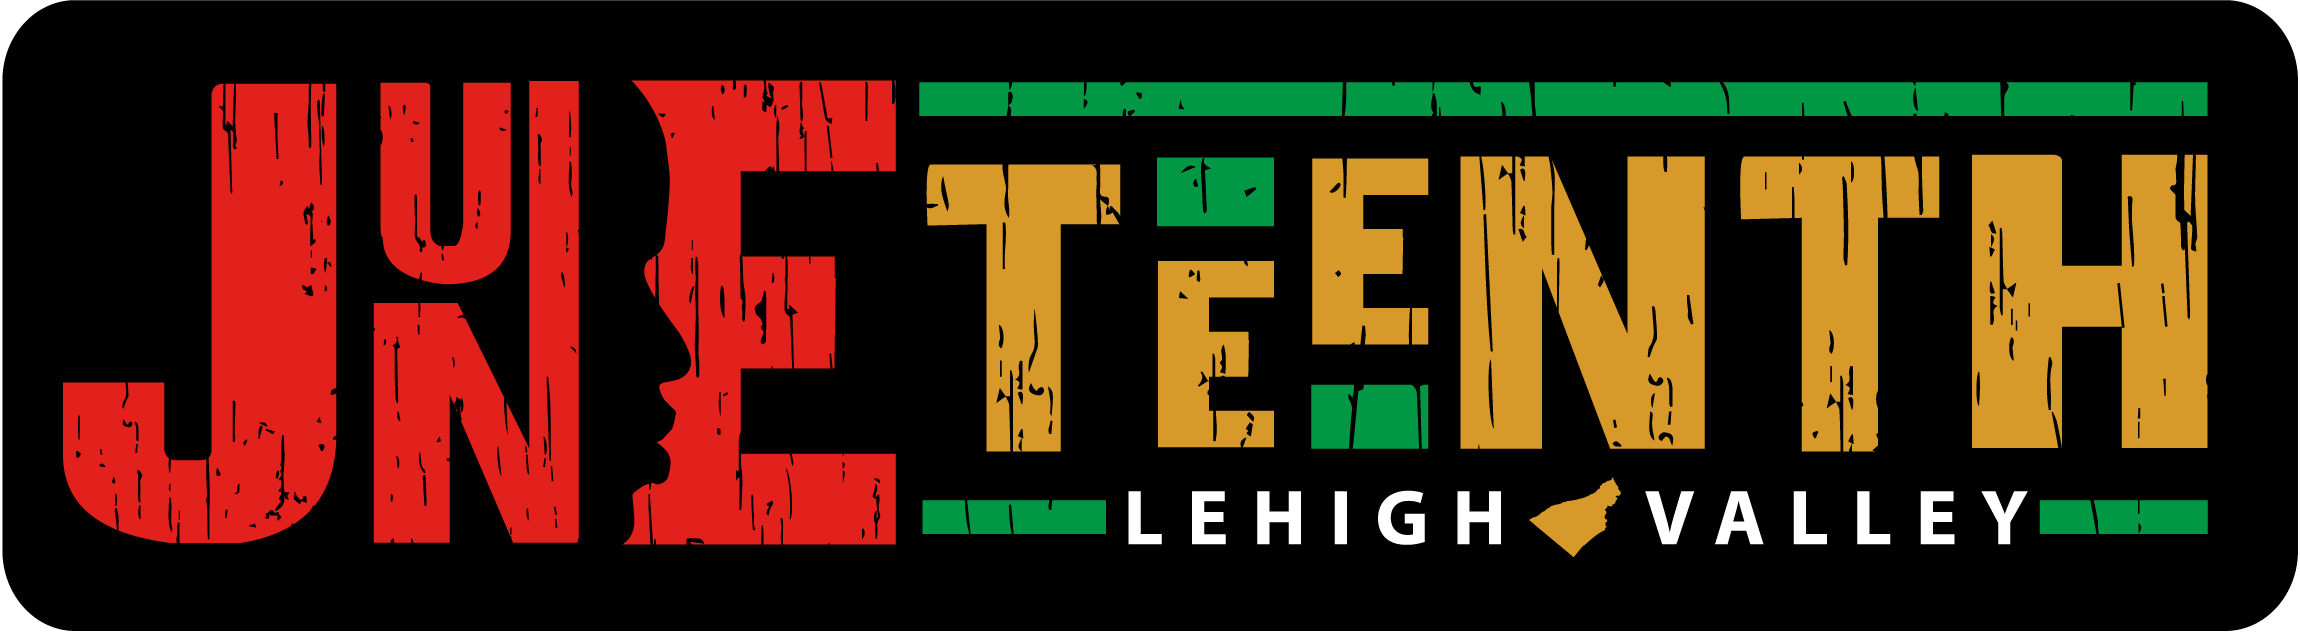 LV Flower show logo - Lehigh Happening